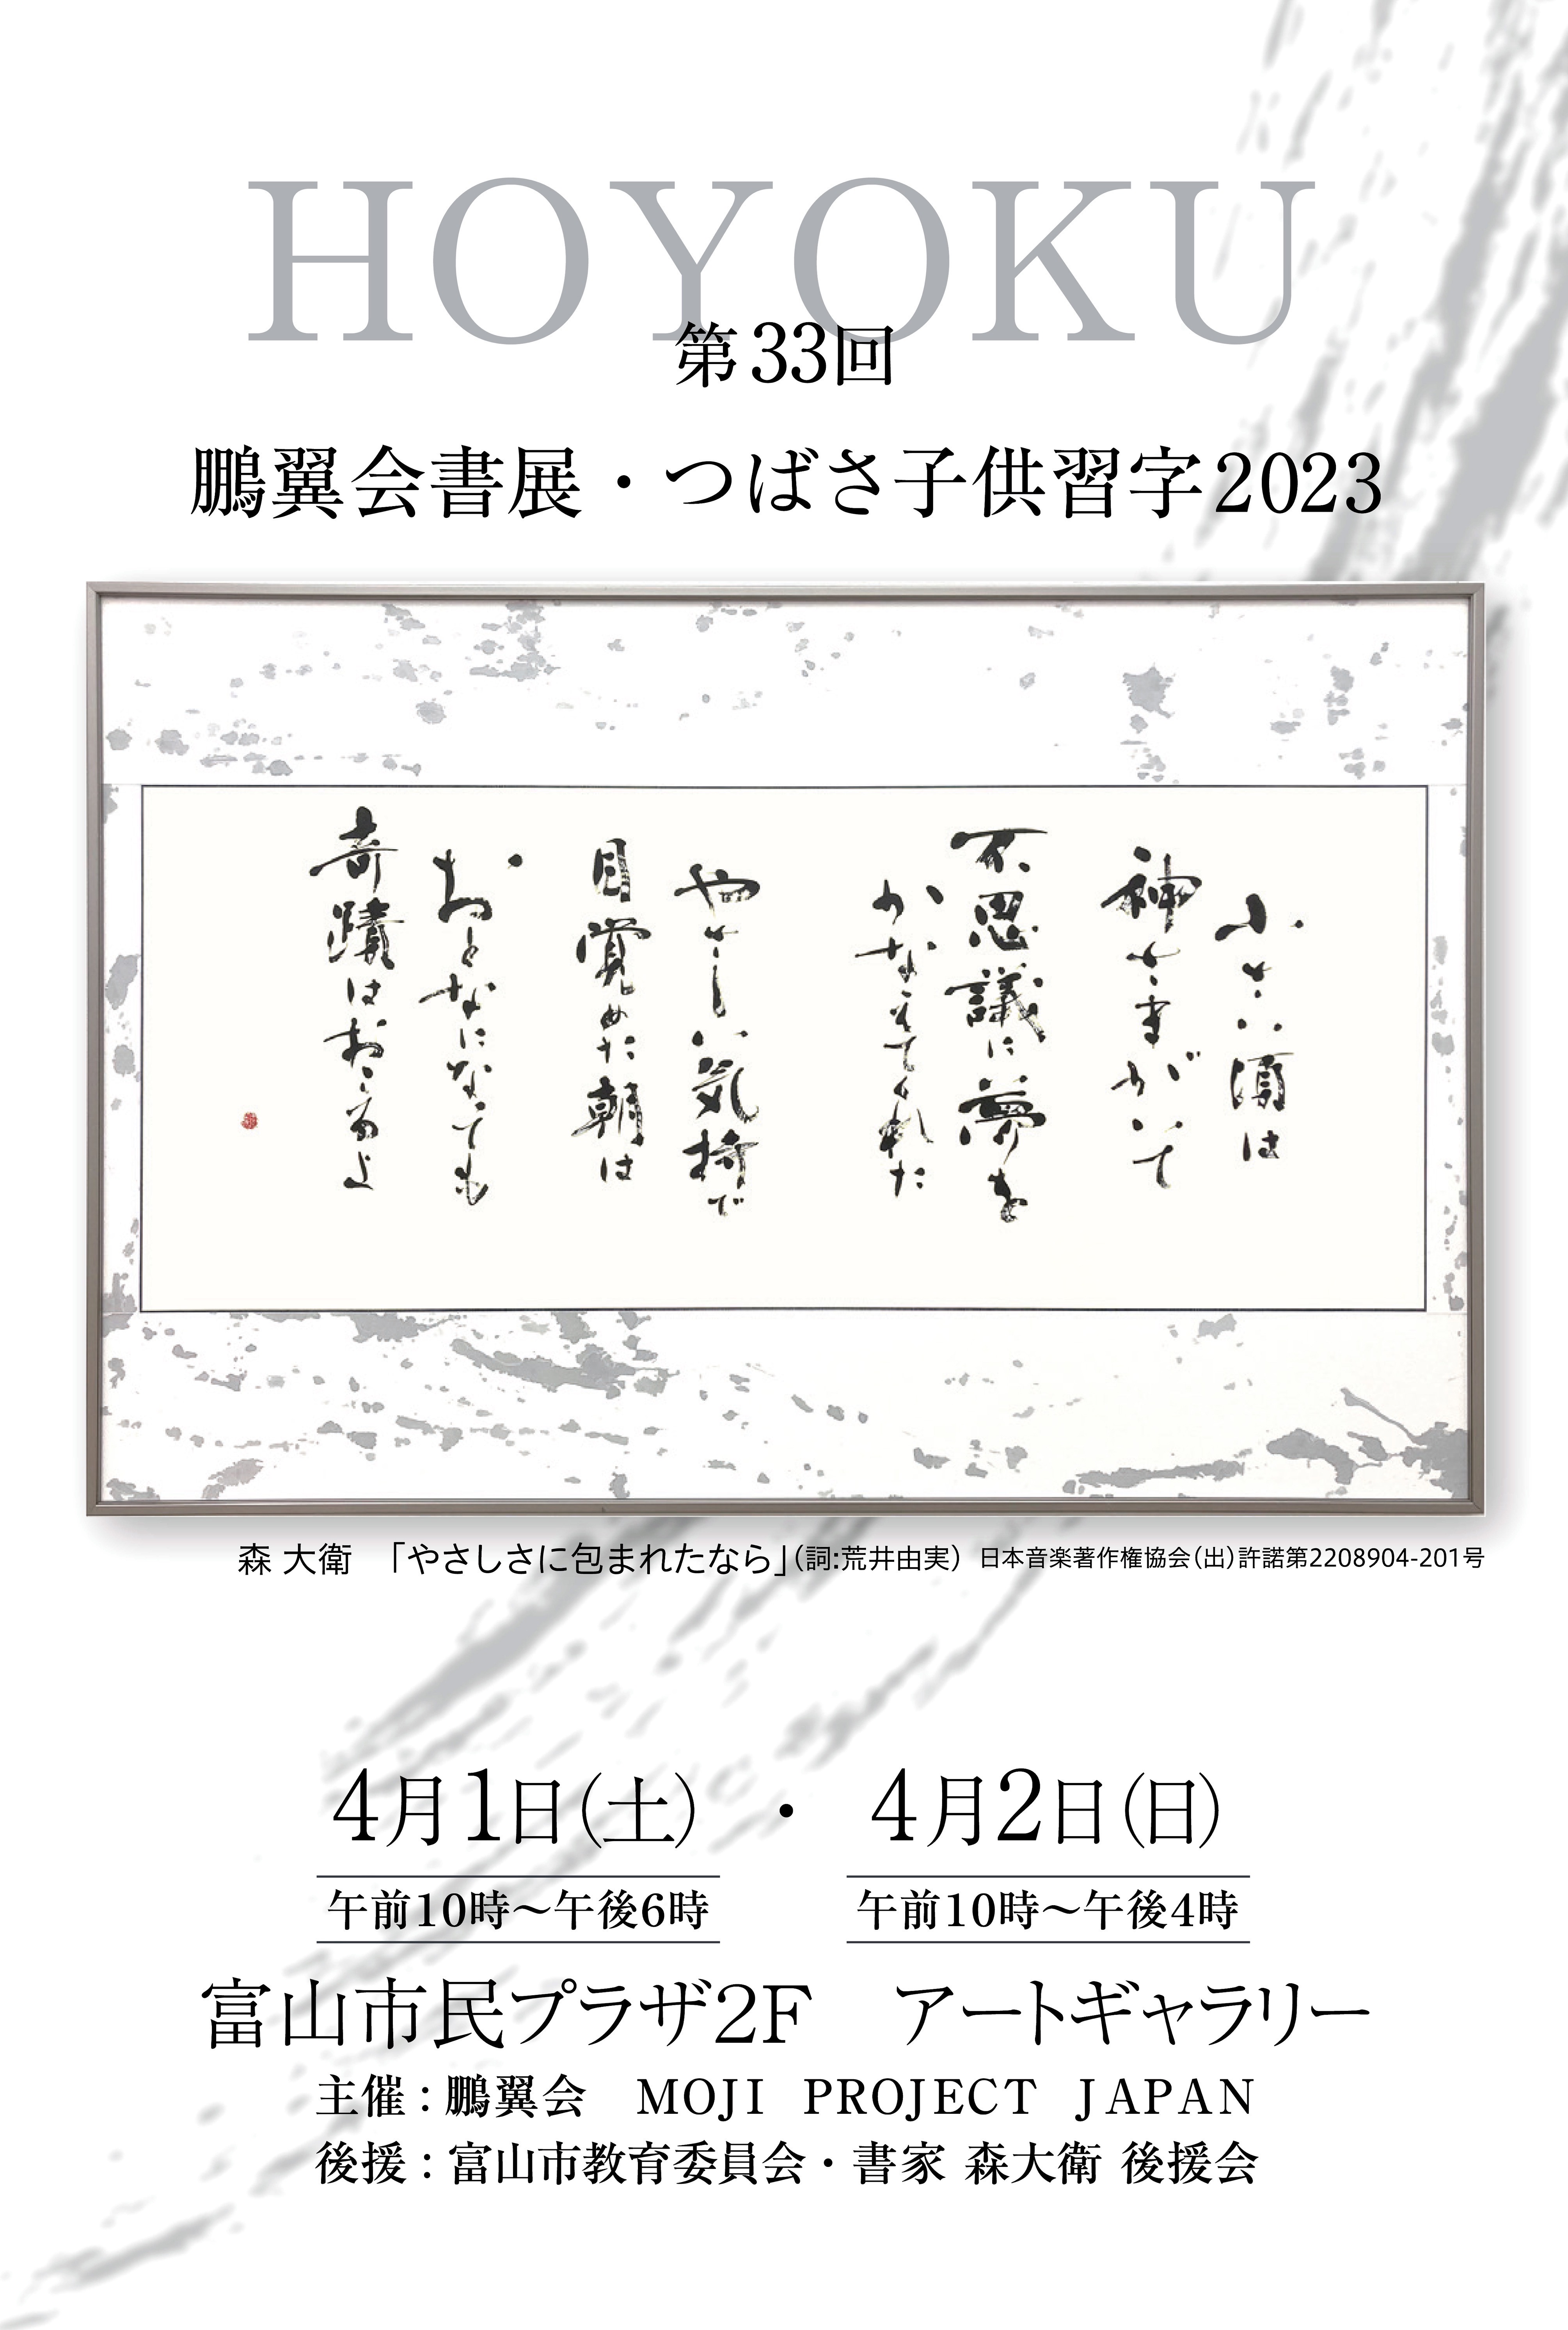 『第33回 鵬翼会書展・つばさ子供習字2023』